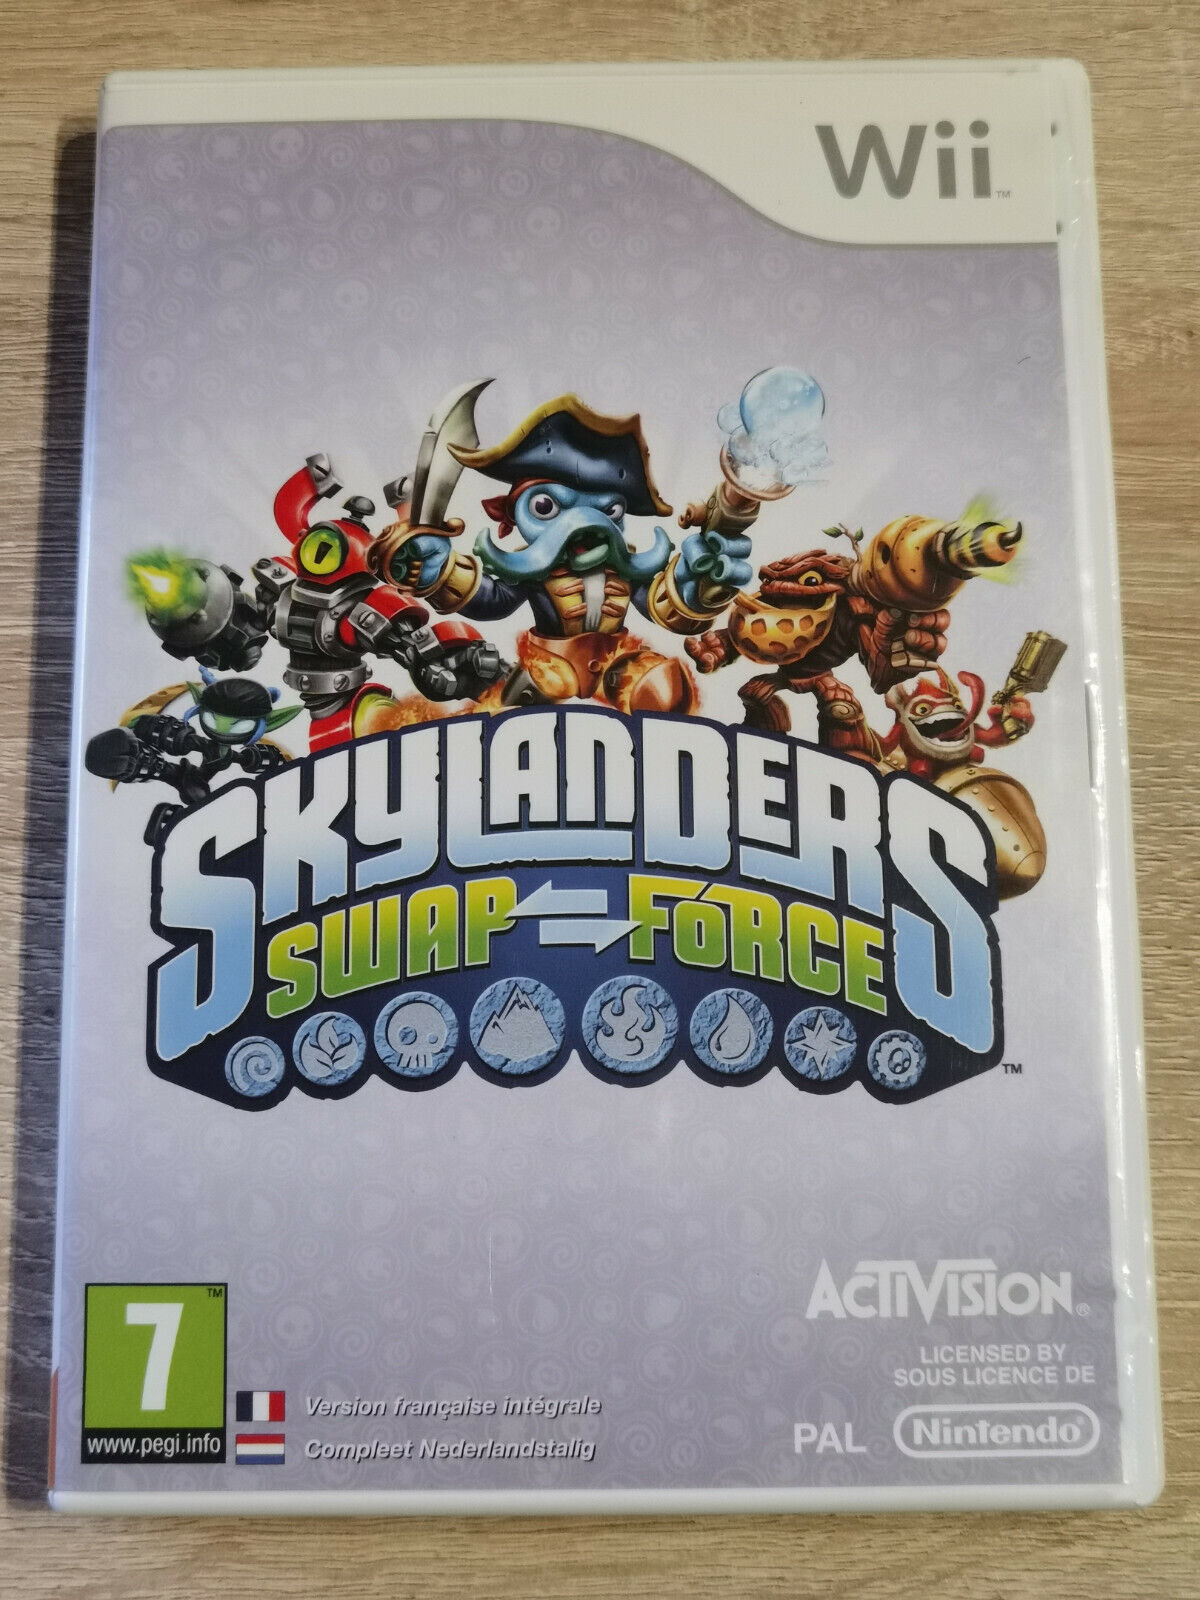 Nintendo Wii Skylanders Swap Force Game Only